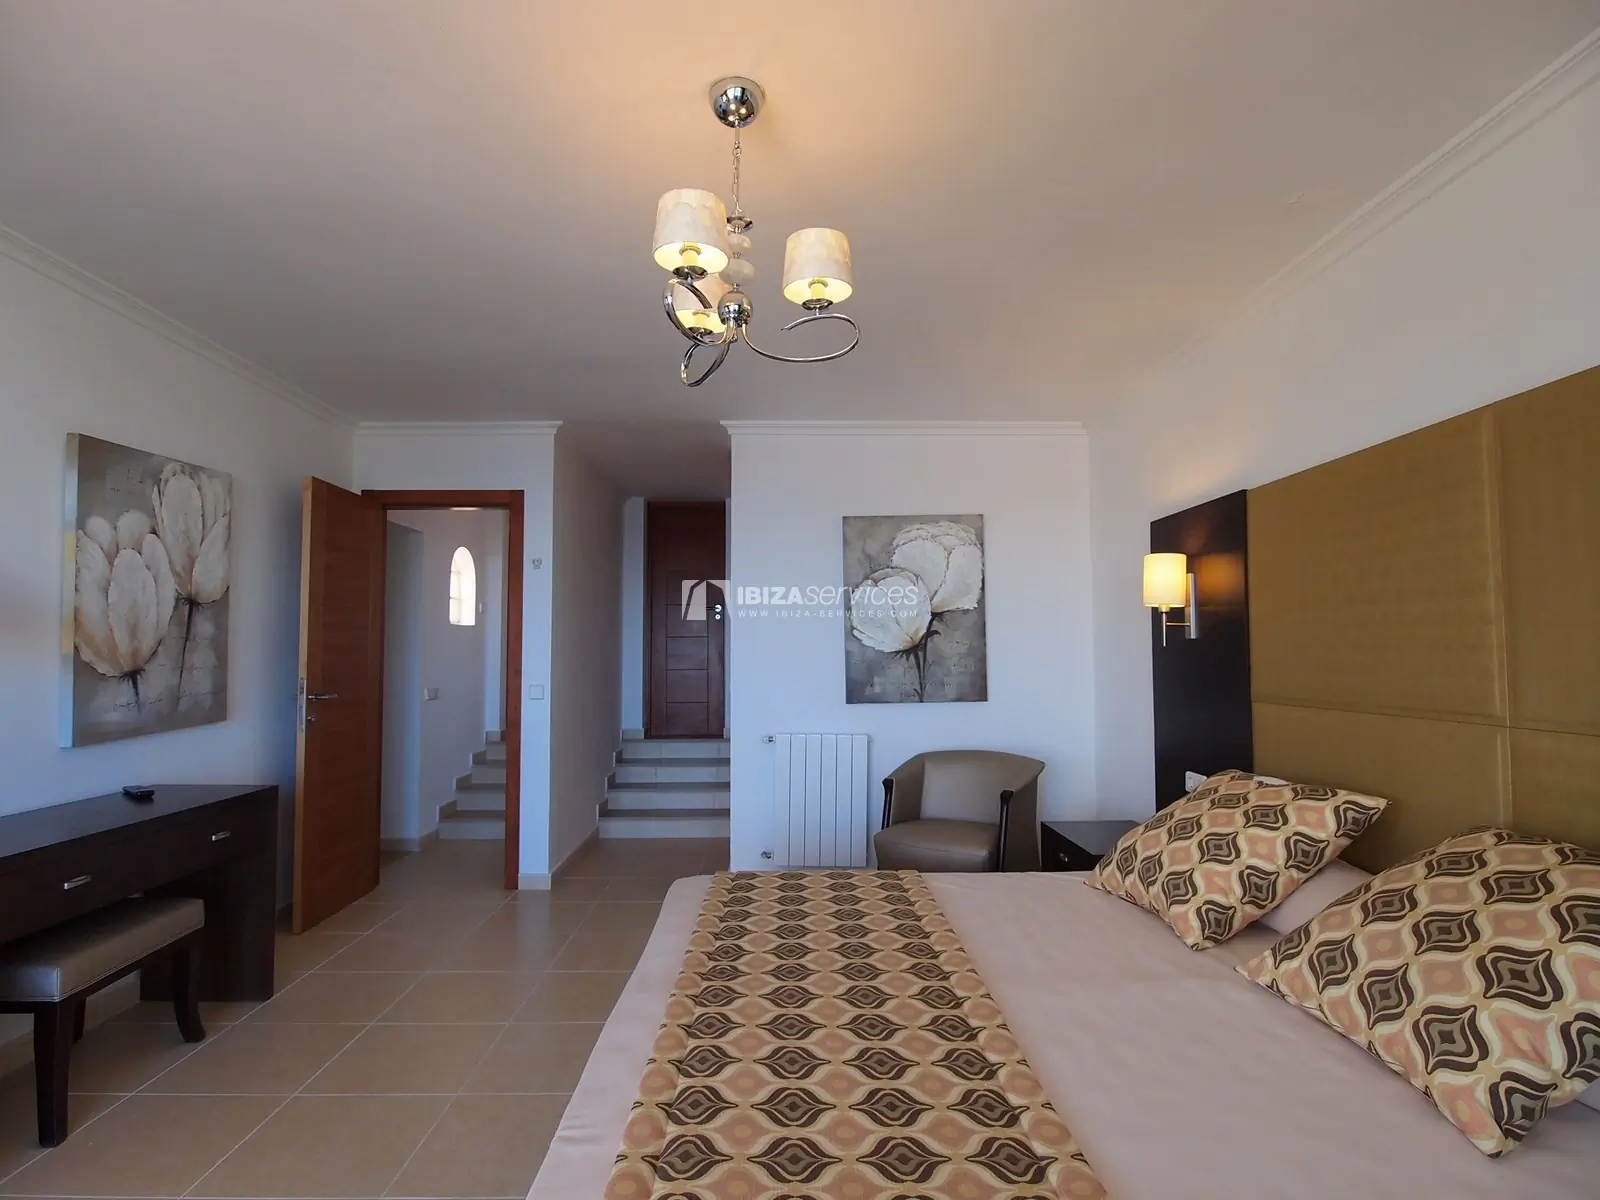 7 bedroom villa overlooking the sea Cala Moli